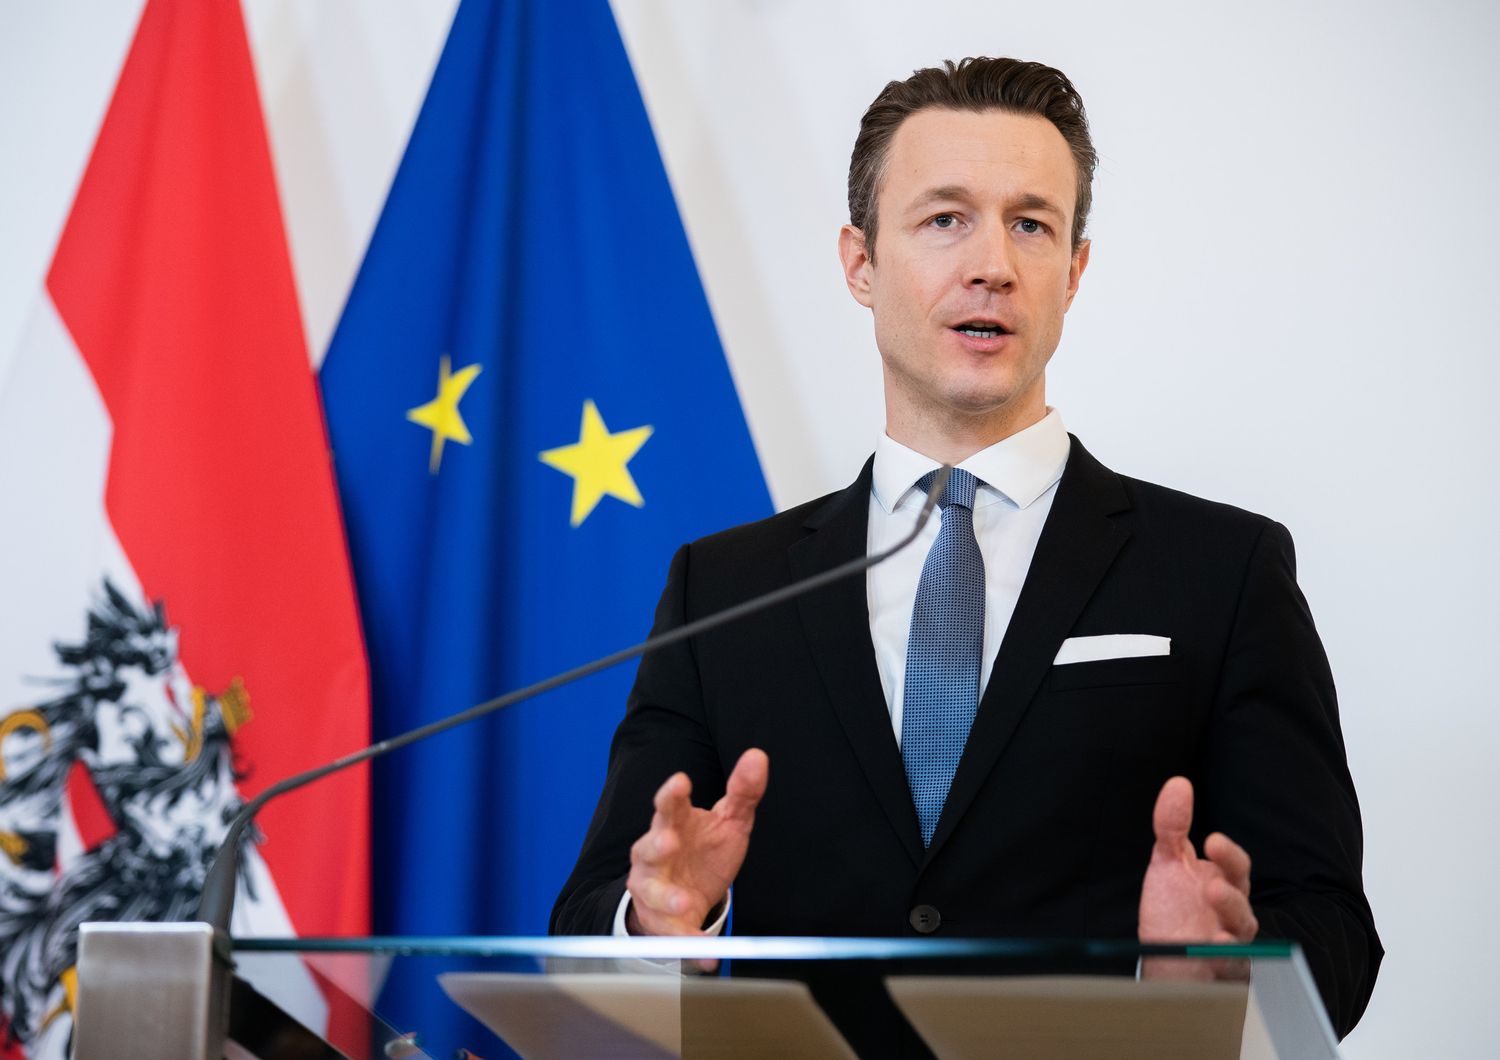 Austria pacchetto stimoli 14 miliardi